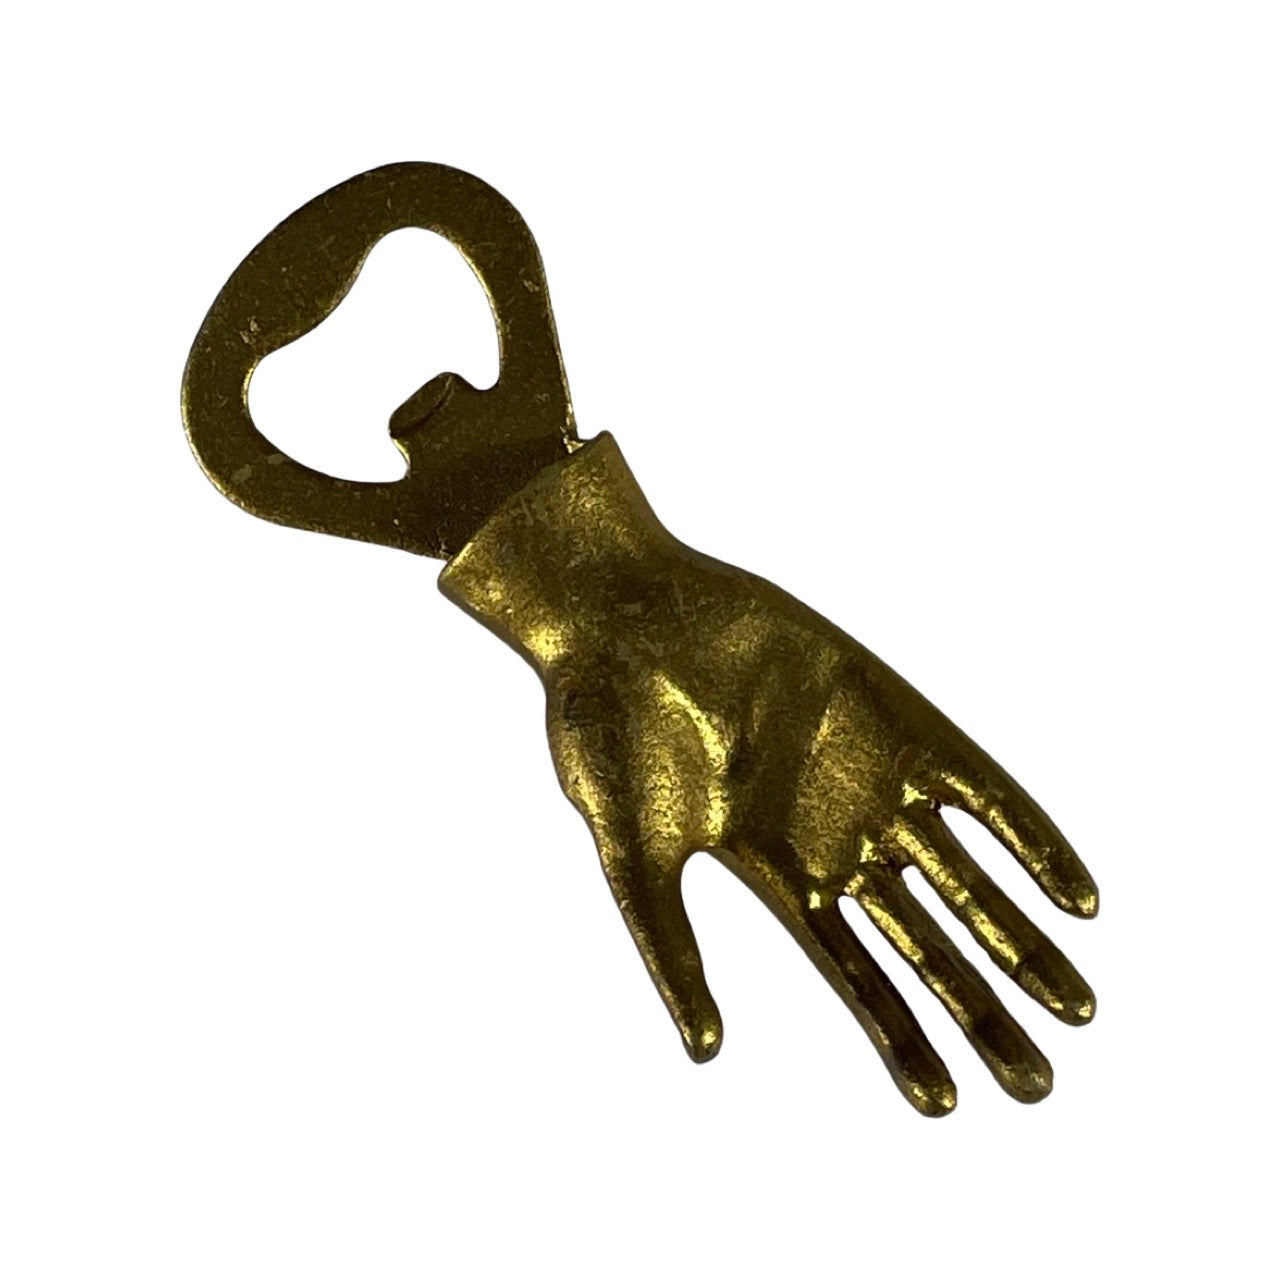 Image of a gold finish cast iron hand shape bottle opener.